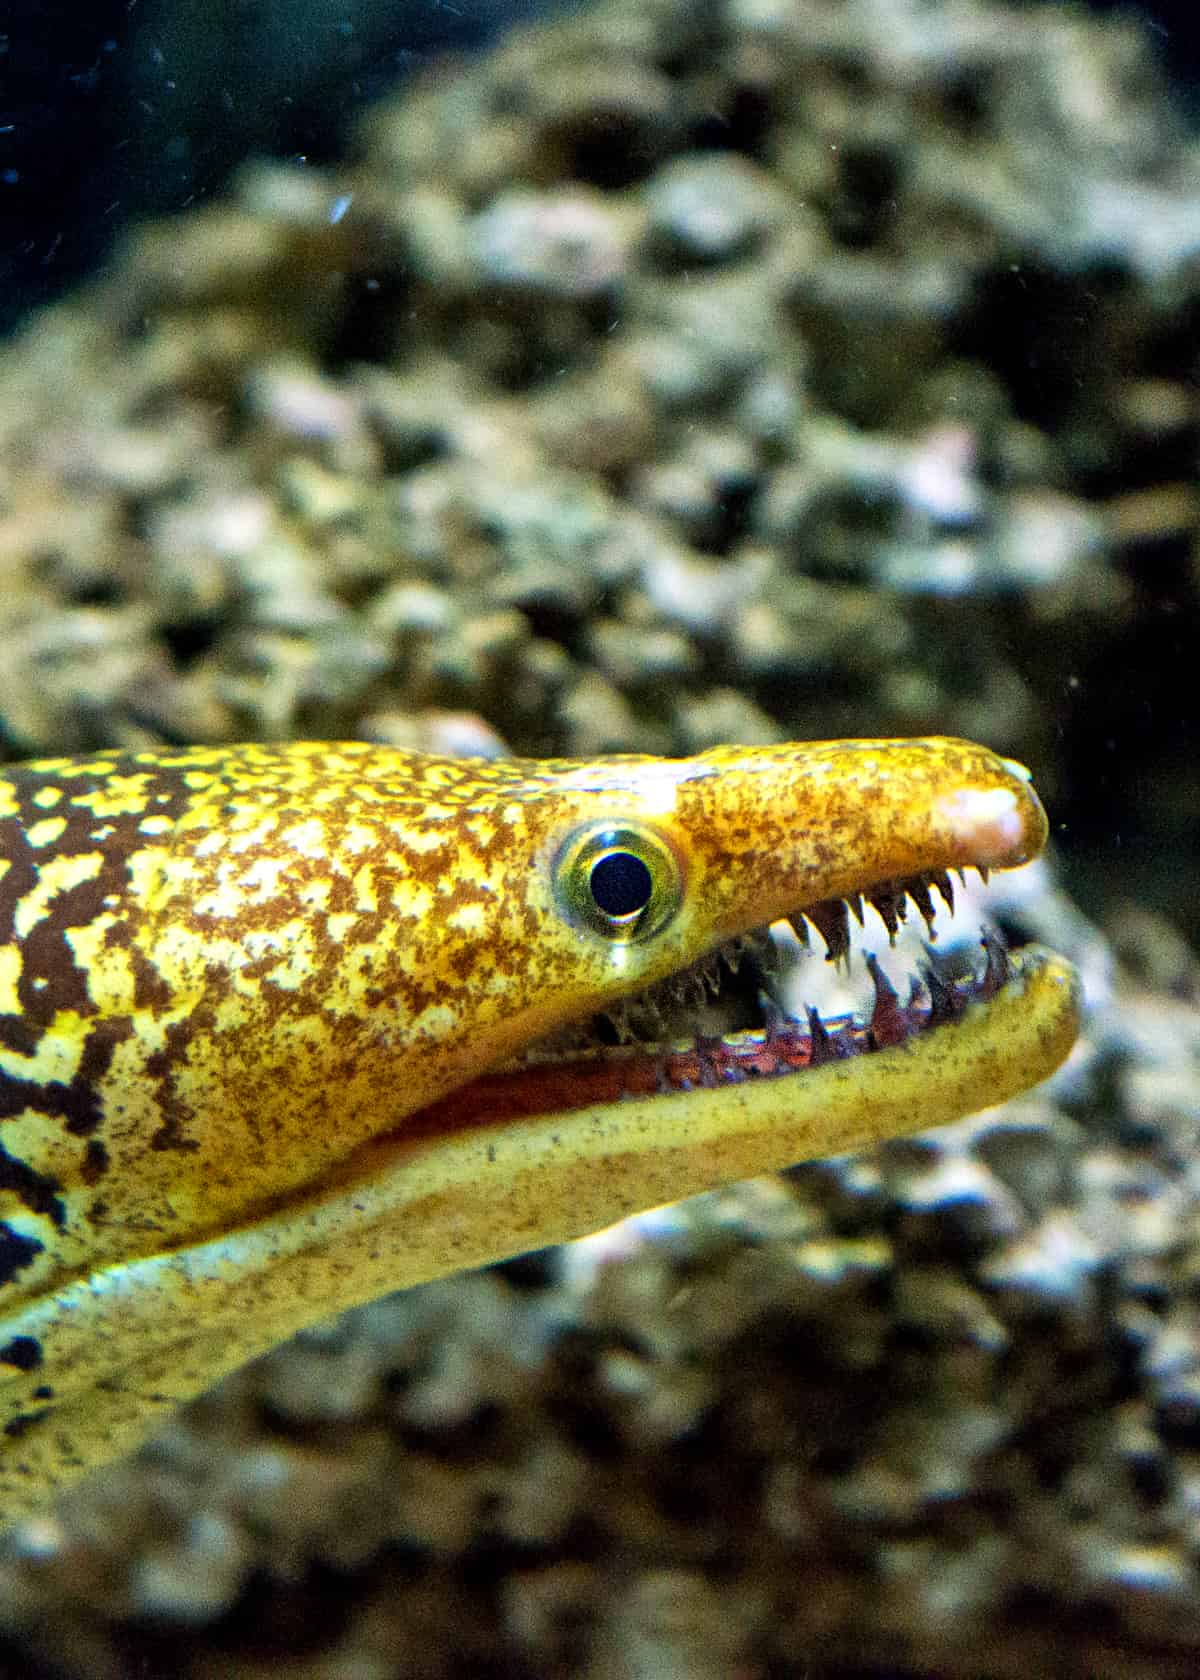 Scary moray eel